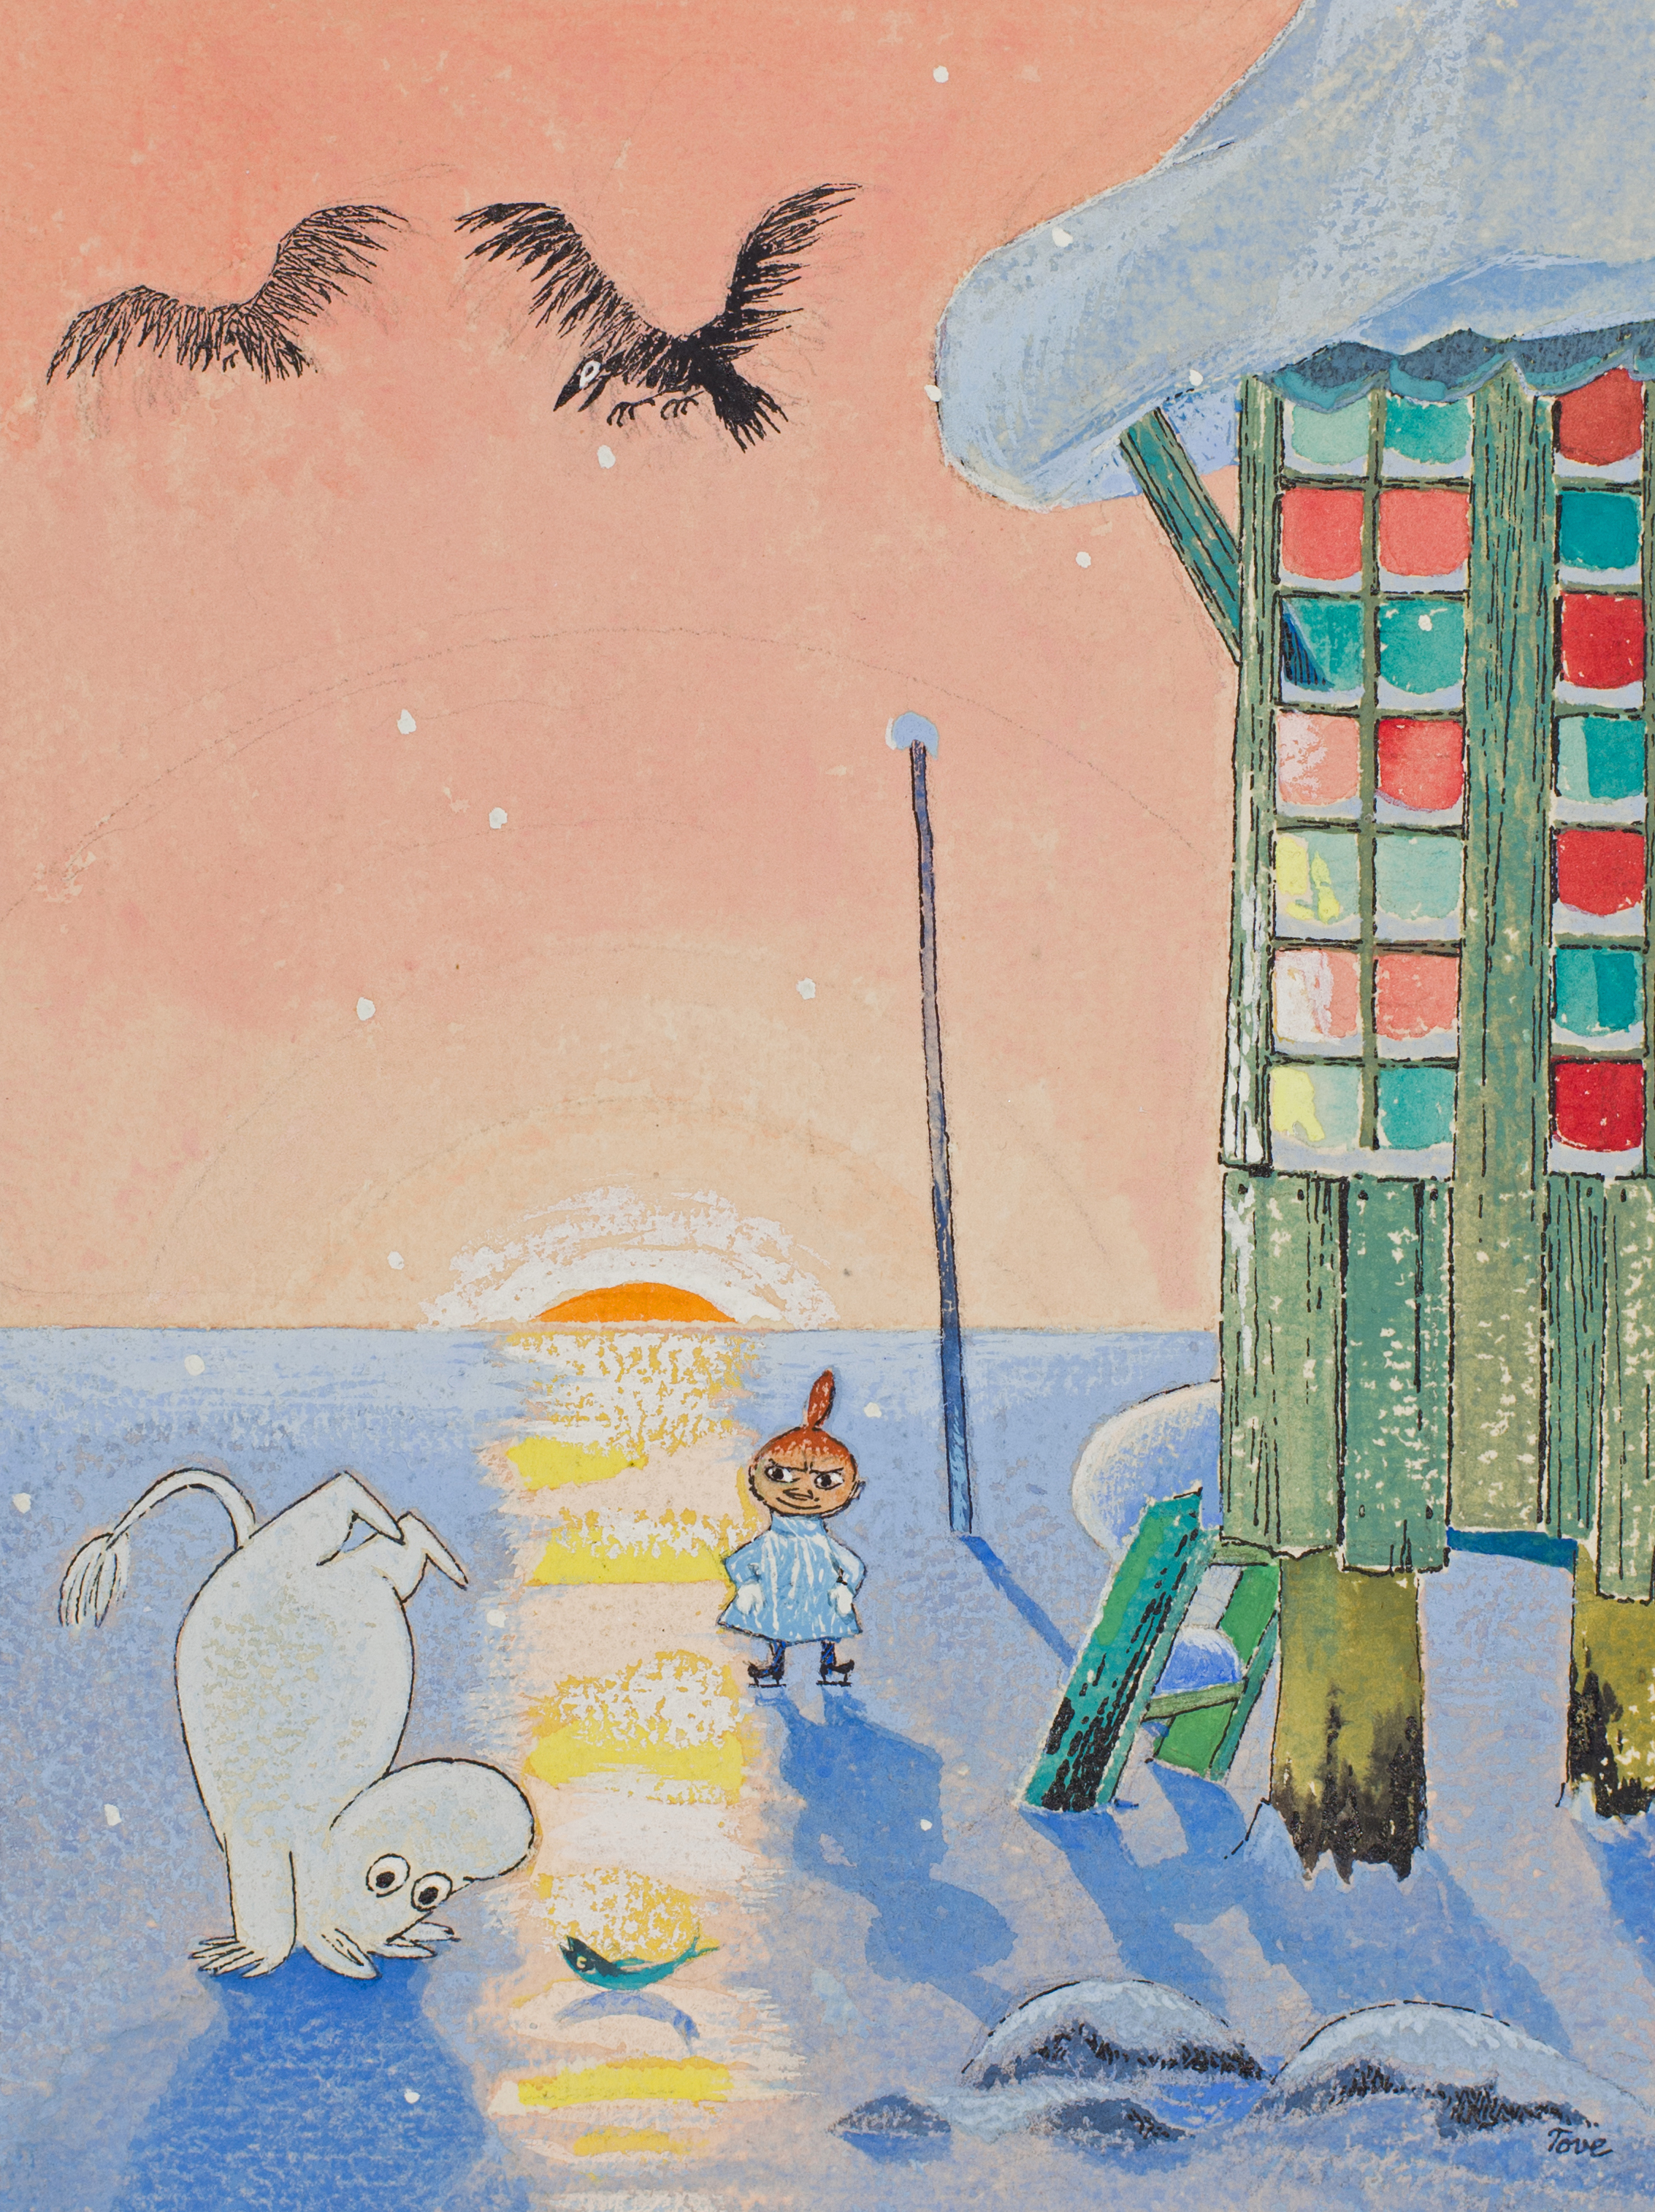 トーベ ヤンソン生誕100年記念 Moomin ムーミン展 かごしま文化情報センター Kcic